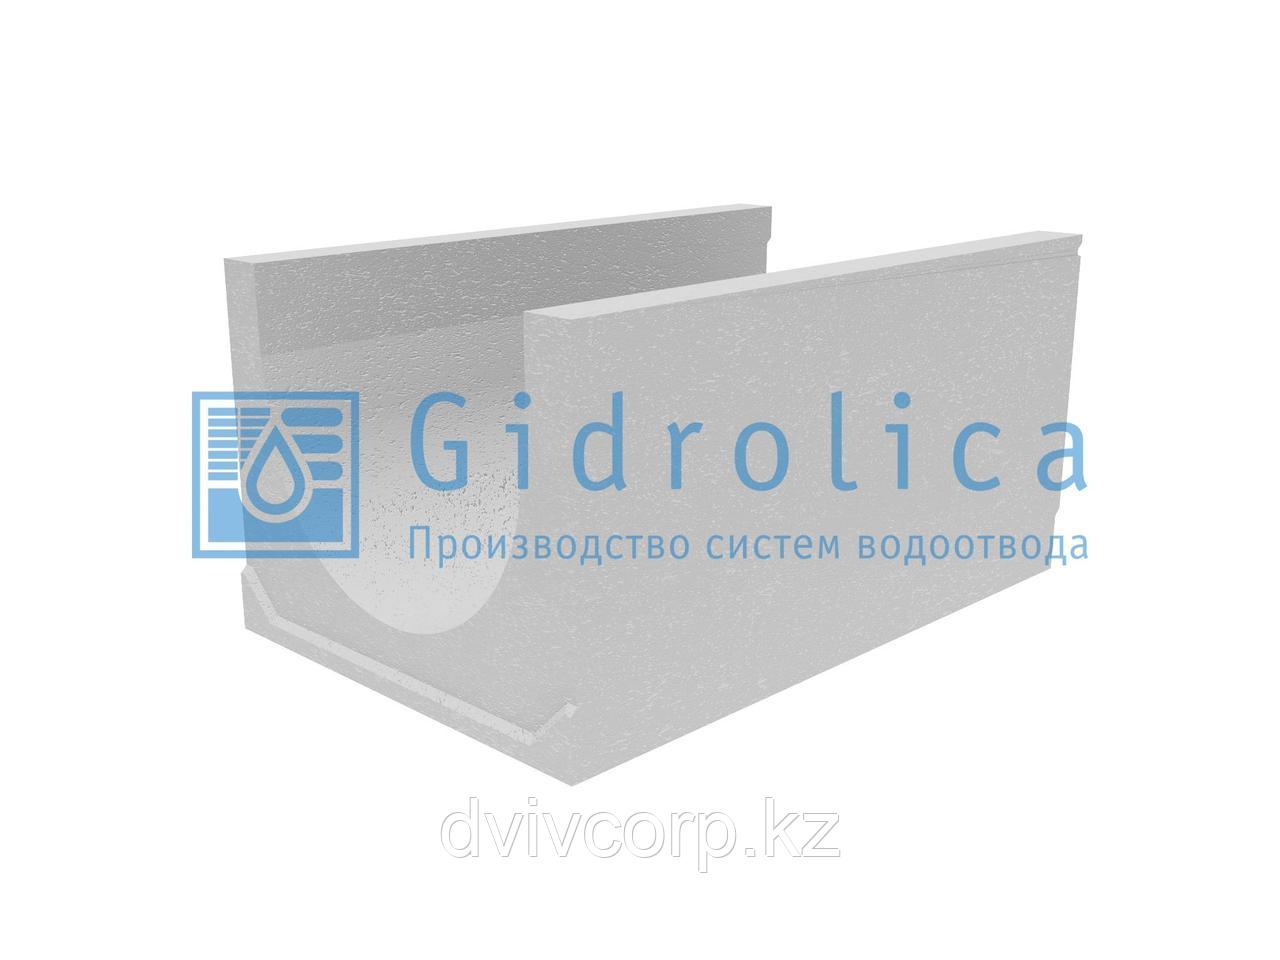 Лоток водоотводный бетонный коробчатый (СО-500мм), с уклоном 0,5%  КUу 100.65(50).50(41) - BGU-XL, № 10